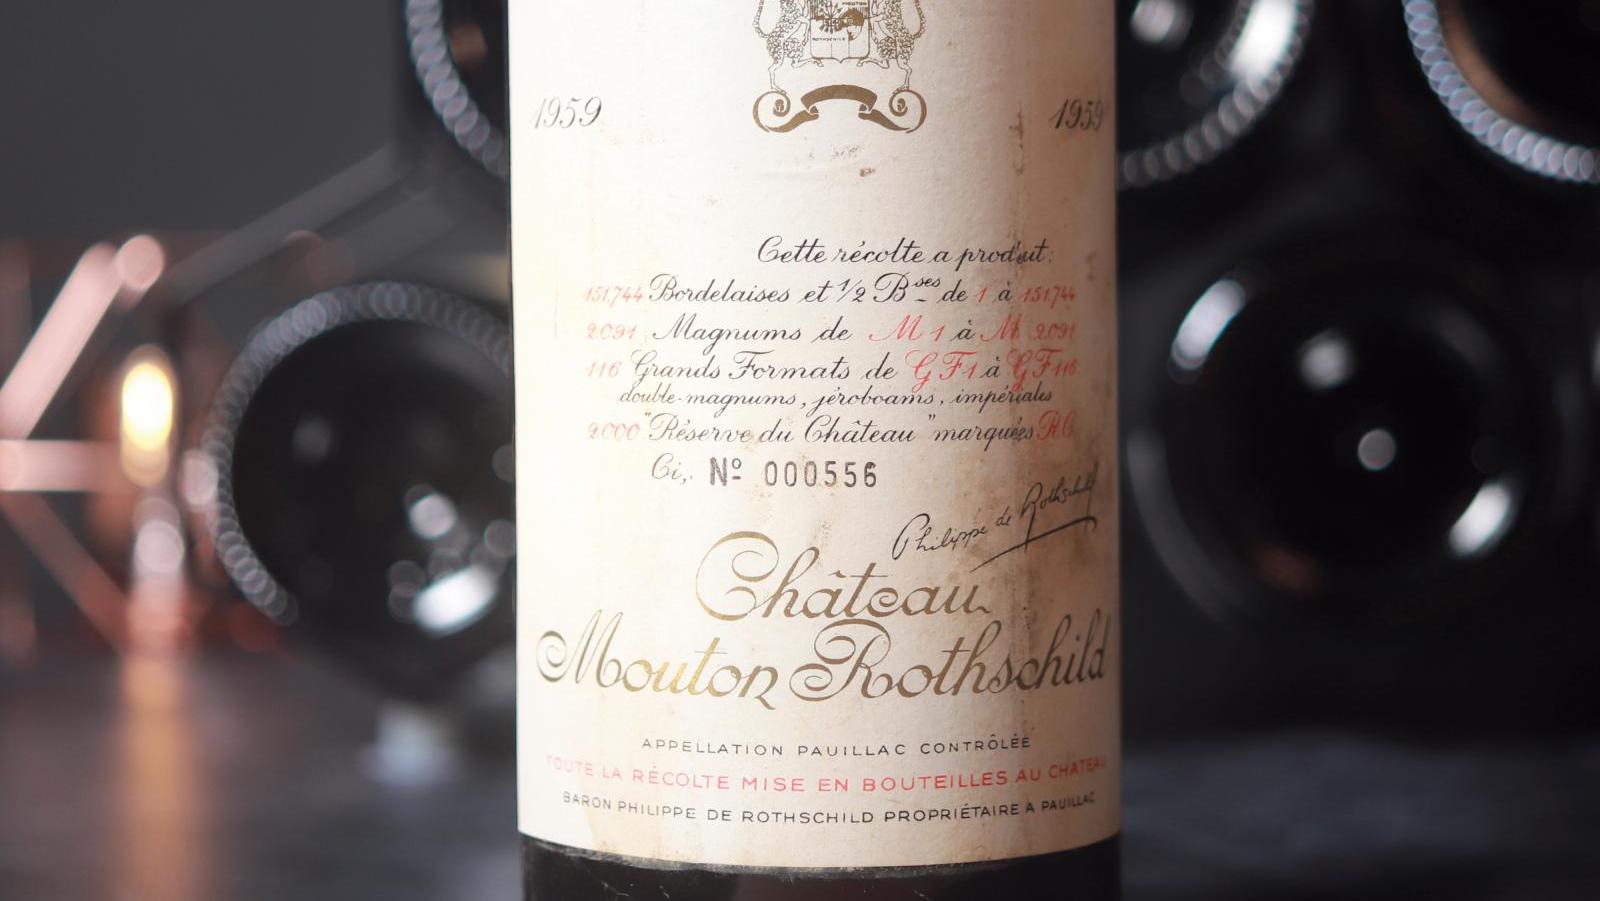 Une bouteille de château-mouton-rothschild 1959, vendue sur iDealwine.com et dont... Quand Château Mouton-Rothschild conjugue le monde du vin et de l’art